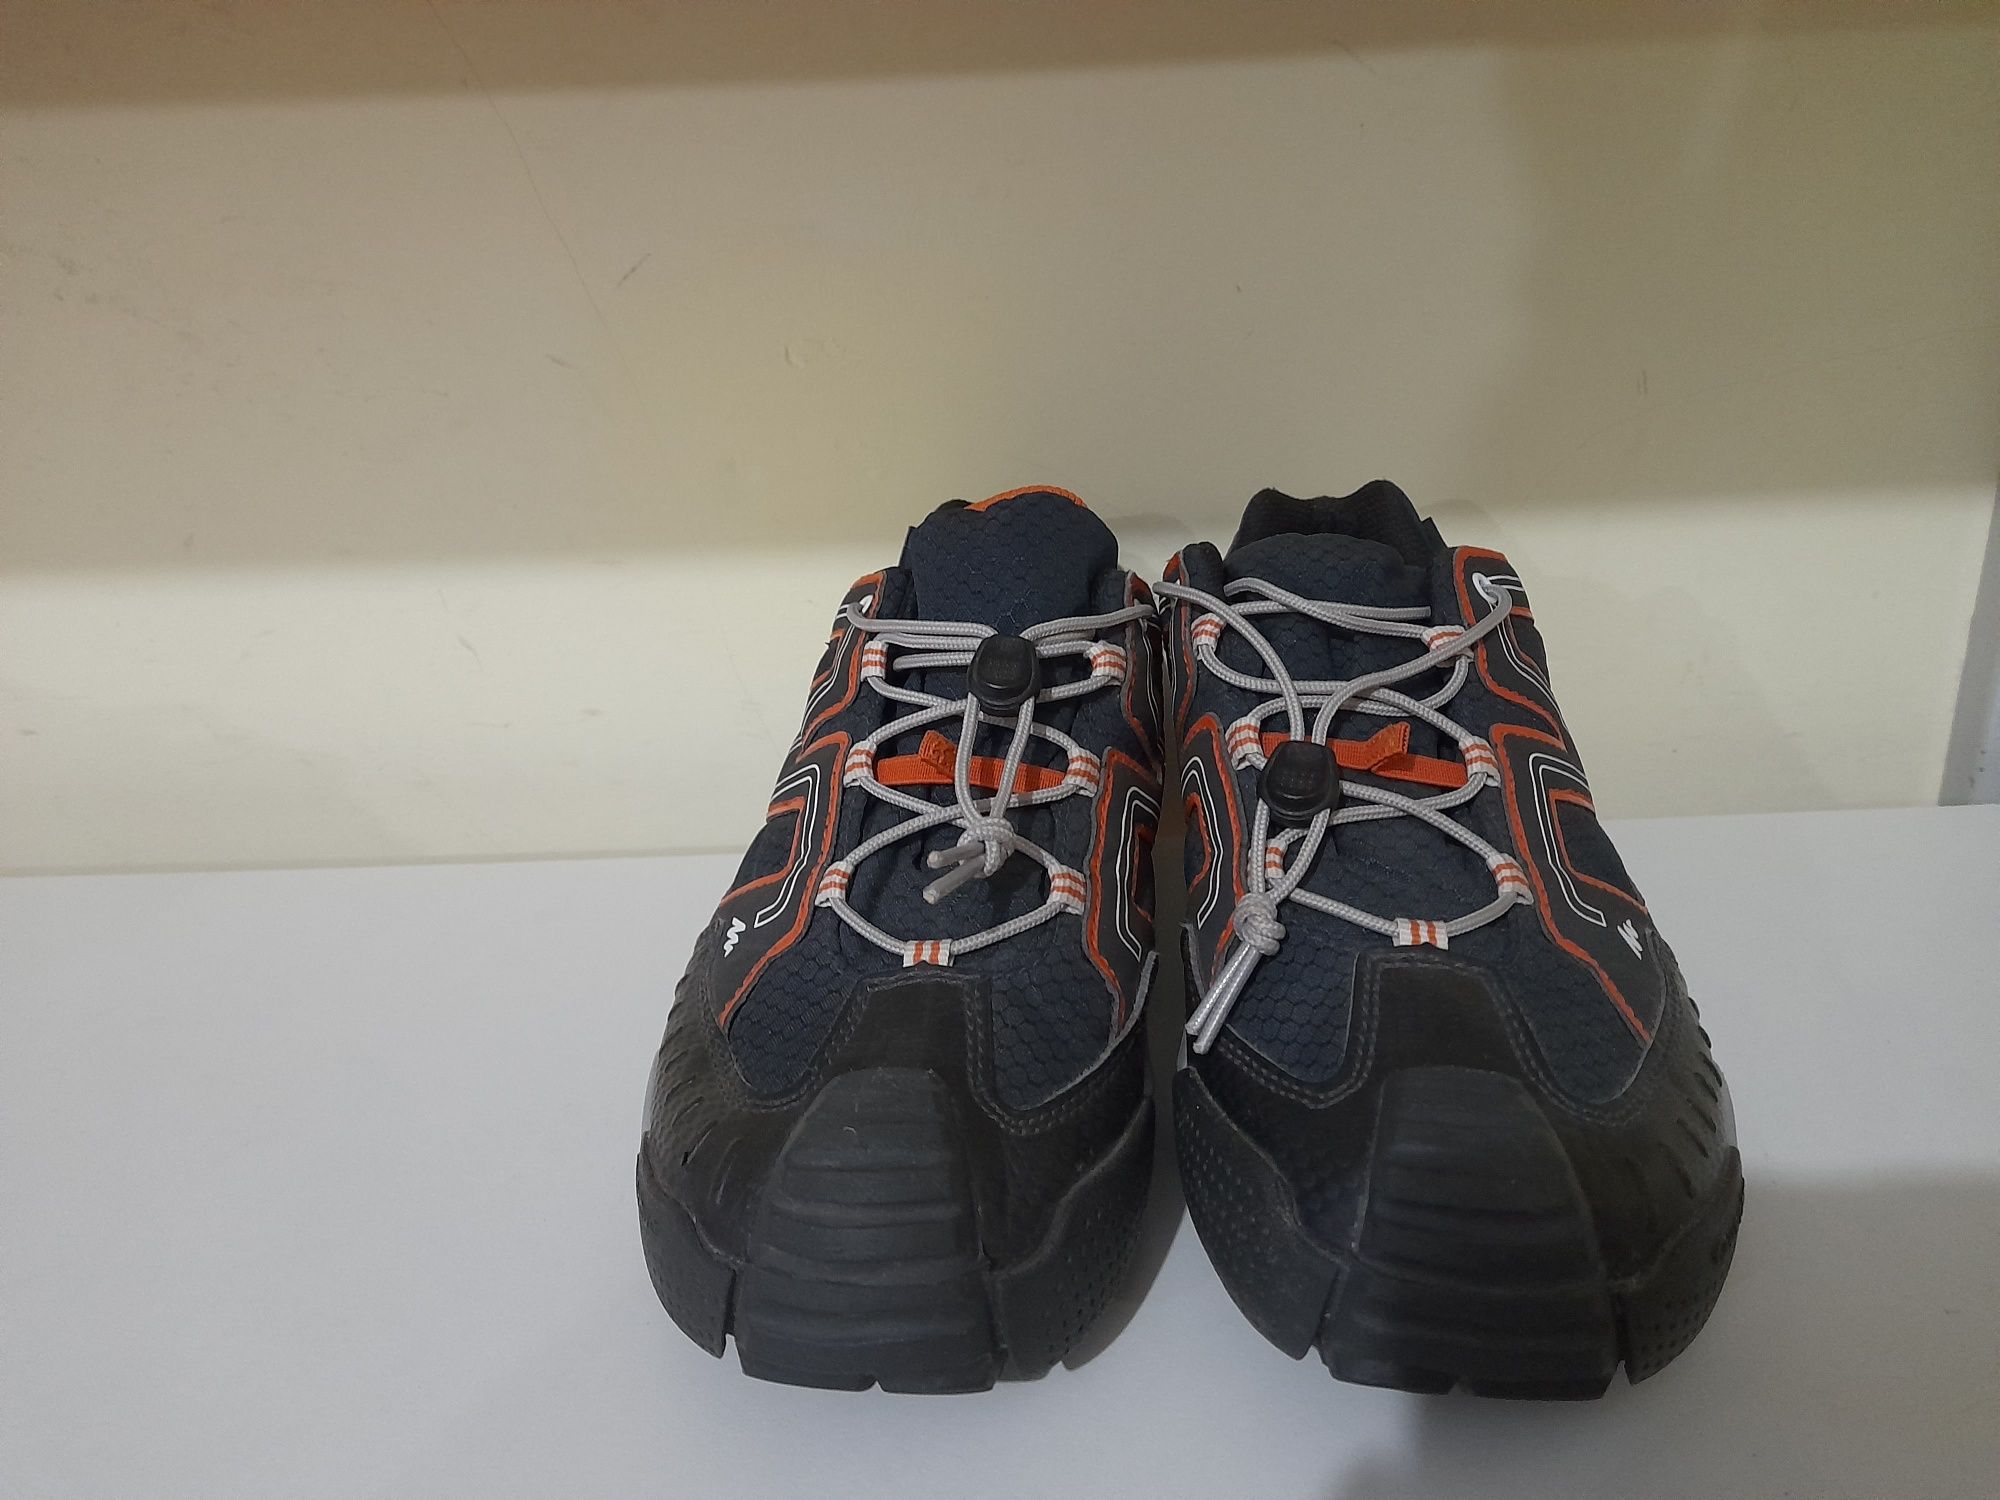 QUECHUAQ Crossrock трекинговые кроссовки водонепроницаемые, 38( 24 см)